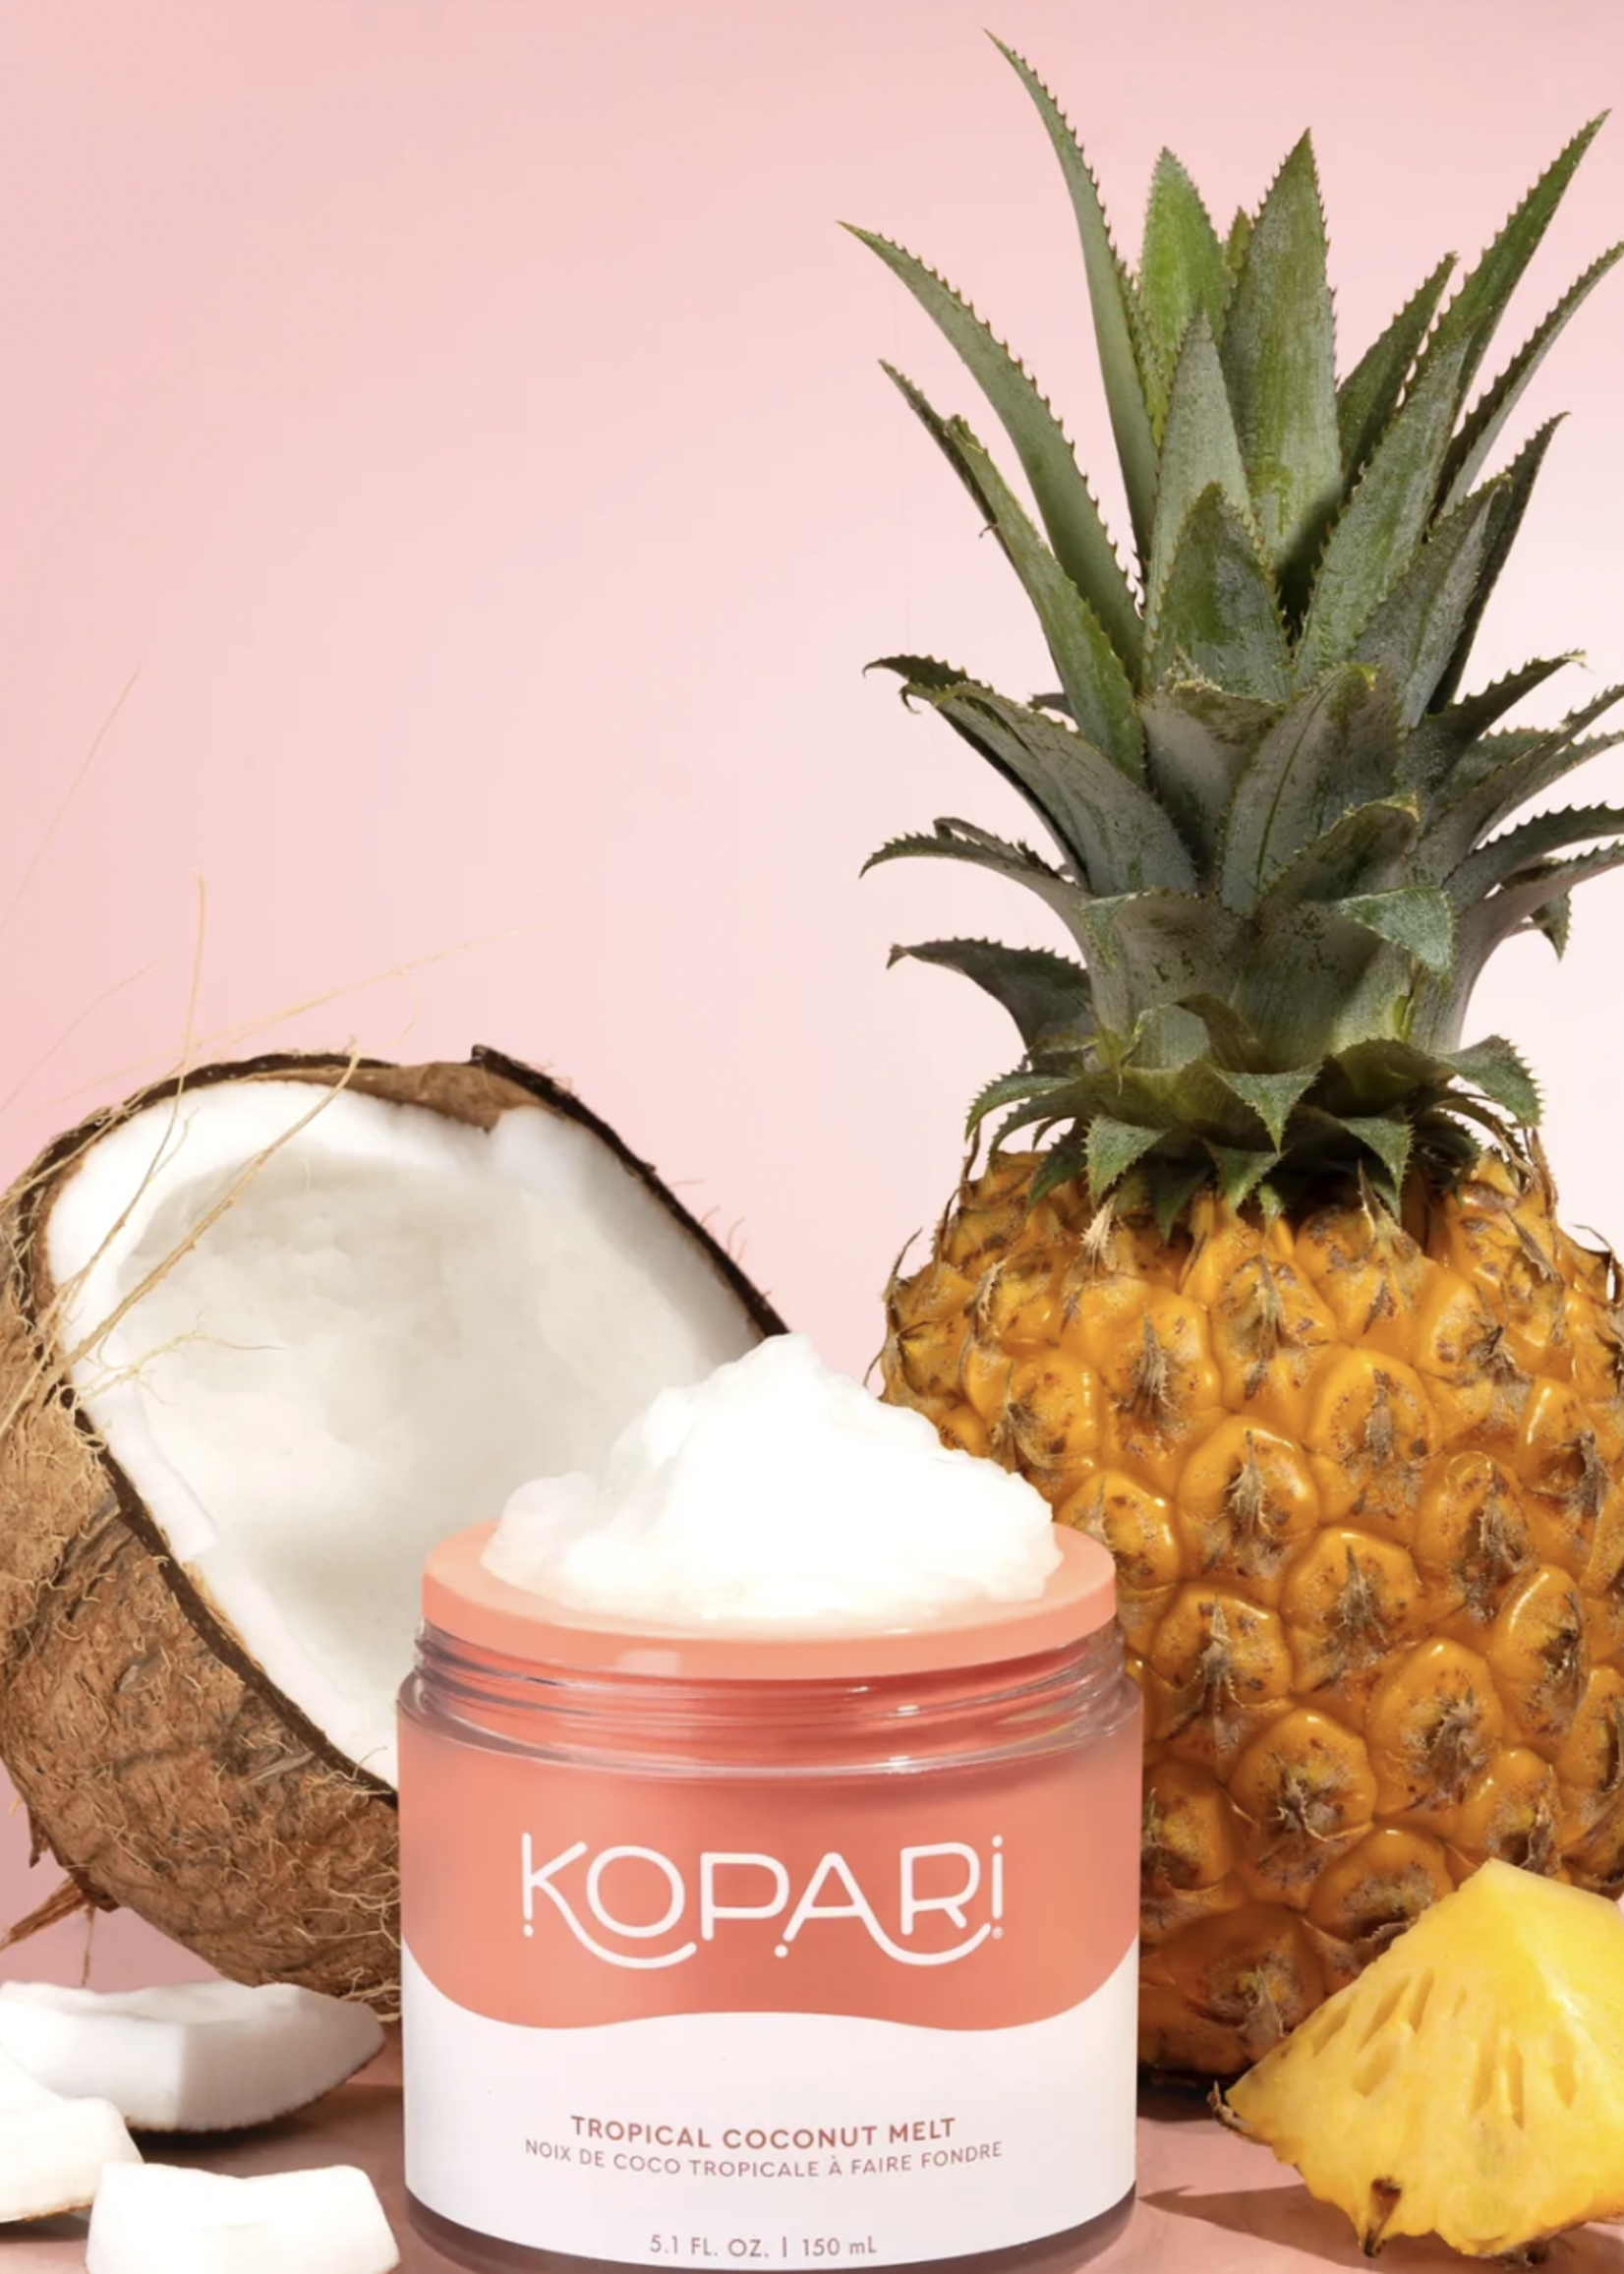 Kopari Kopari Topical Coconut Melt